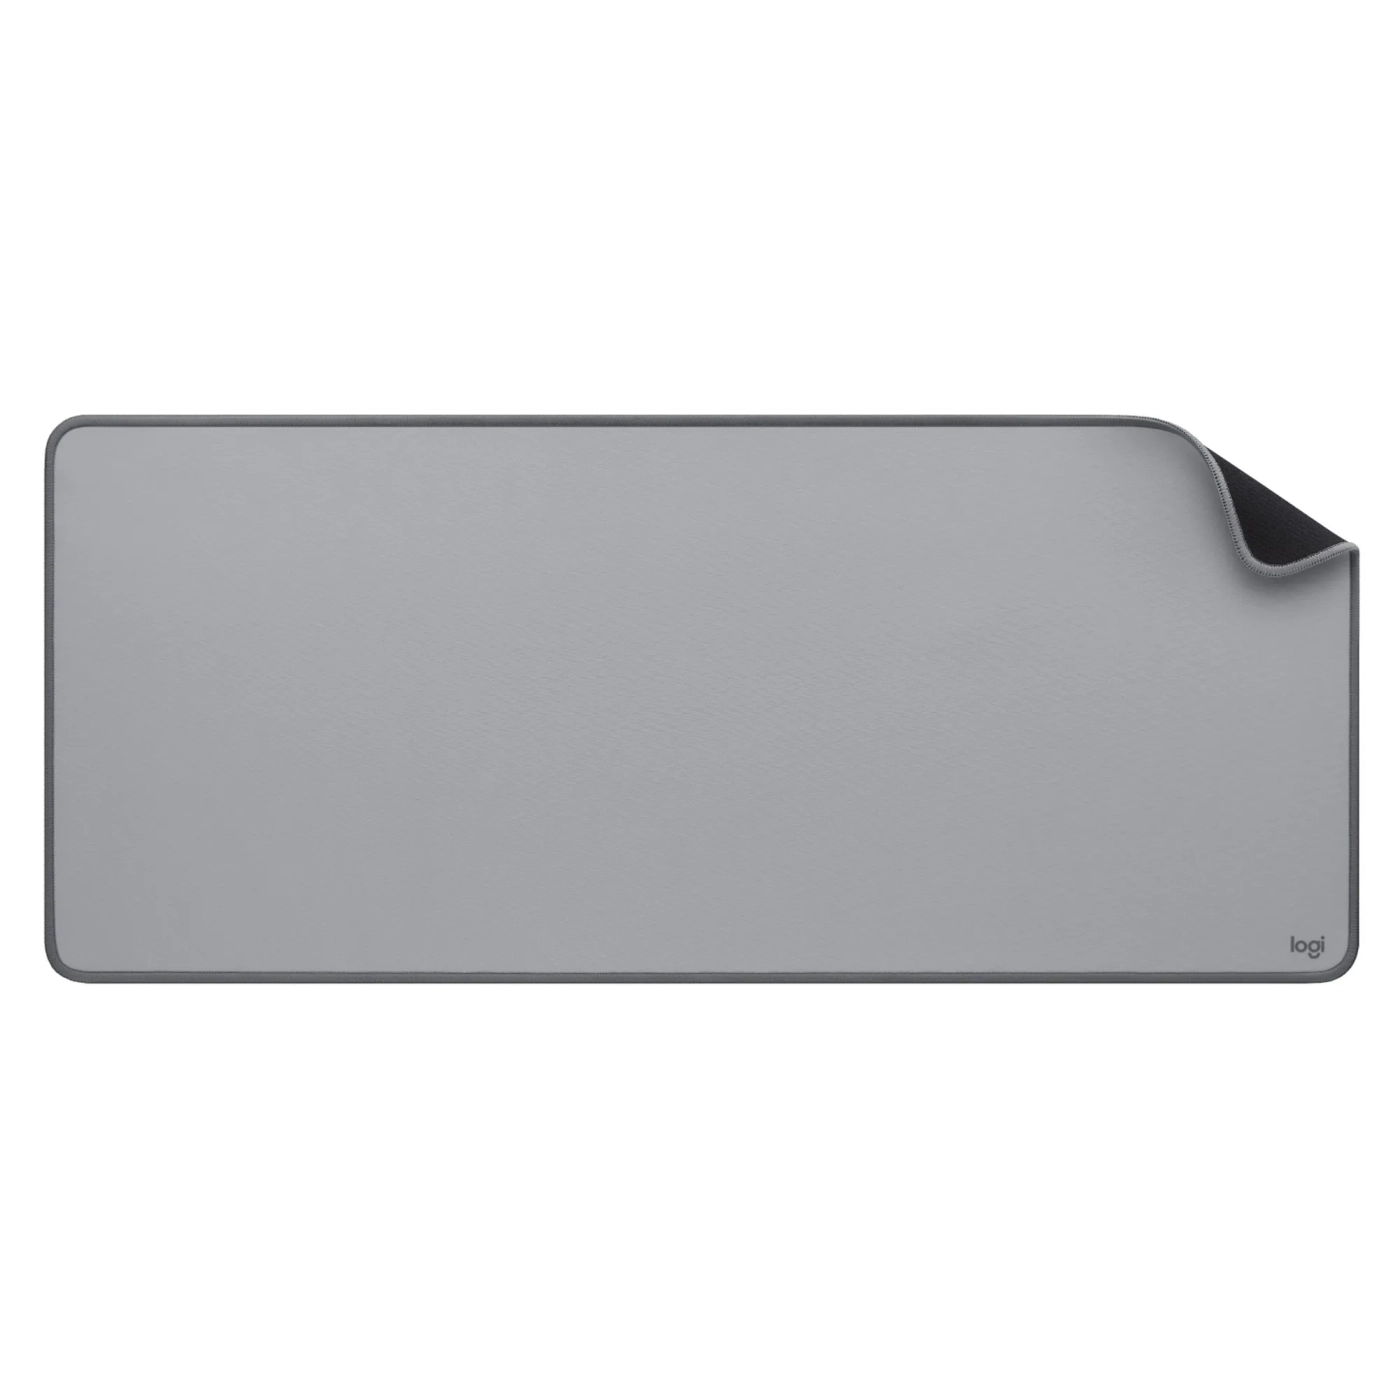 Купить Игровая поверхность Logitech Desk Mat Studio Series Mid Grey (956-000052) - фото 2